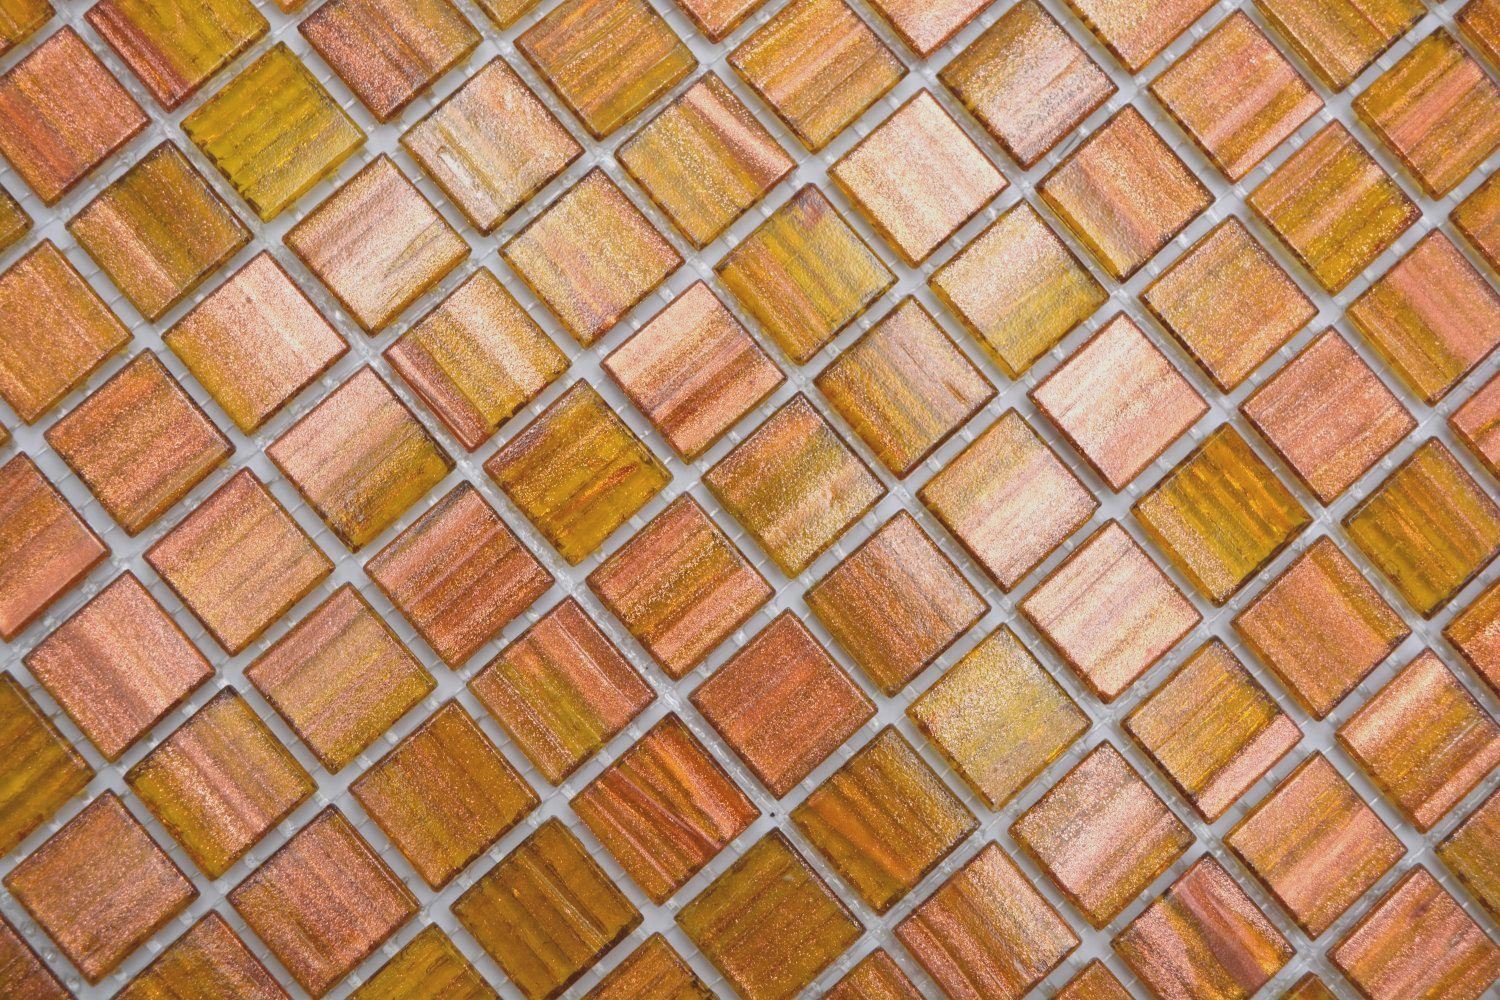 Mosani Mosaikfliesen Quadratisches Mosaikfliesen glänzend hellbraun Glasmosaik